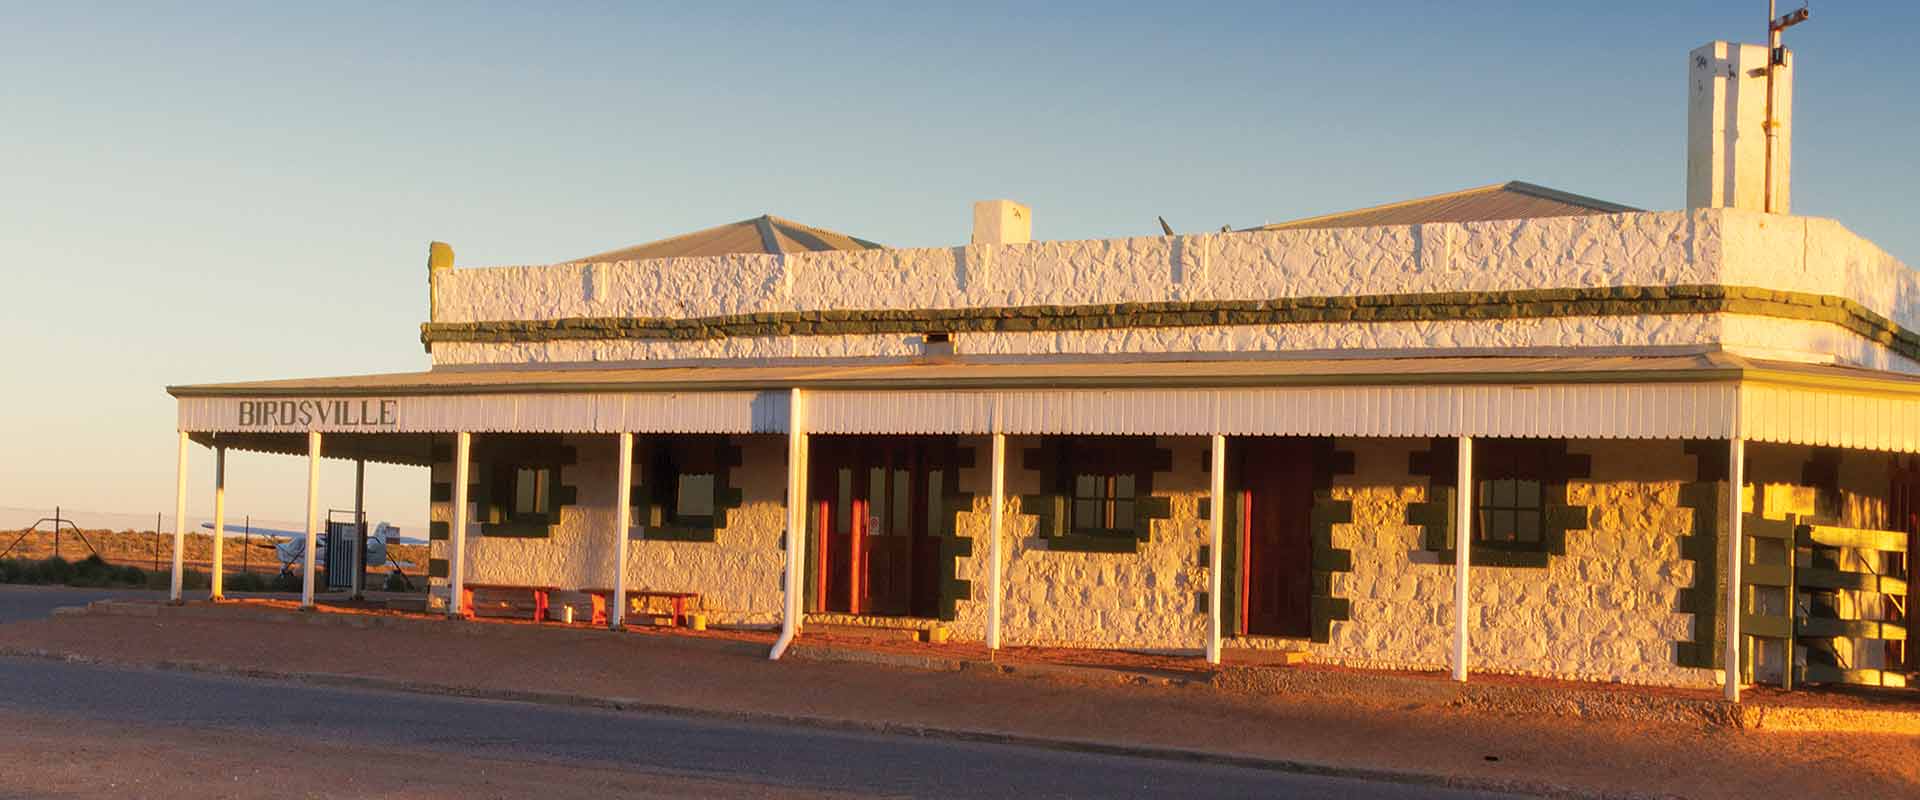 Hotel building in a remote area, South Australia